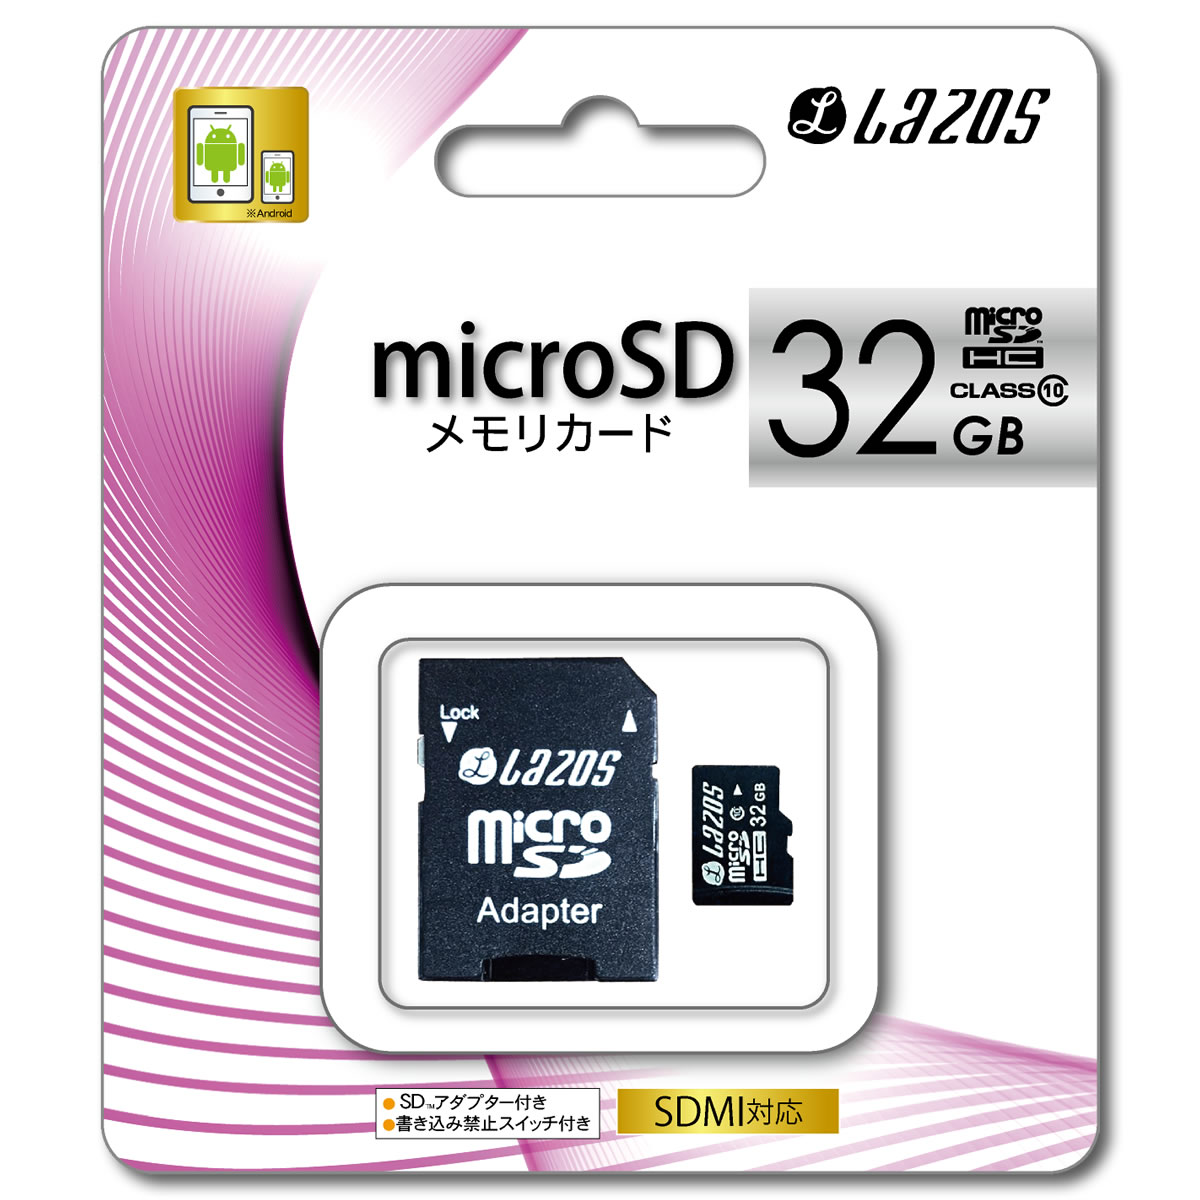 Lazos L-32MS10 Lazos microSDHCメモリーカード 32GB CLAS10 マイクロSDカード L32MS10 microSD 32GB アダプター付 スマートフォン ストレージ 外部メモリ 大容量 防犯カメラ録画 マイクロSDカード 32GB CLASS10